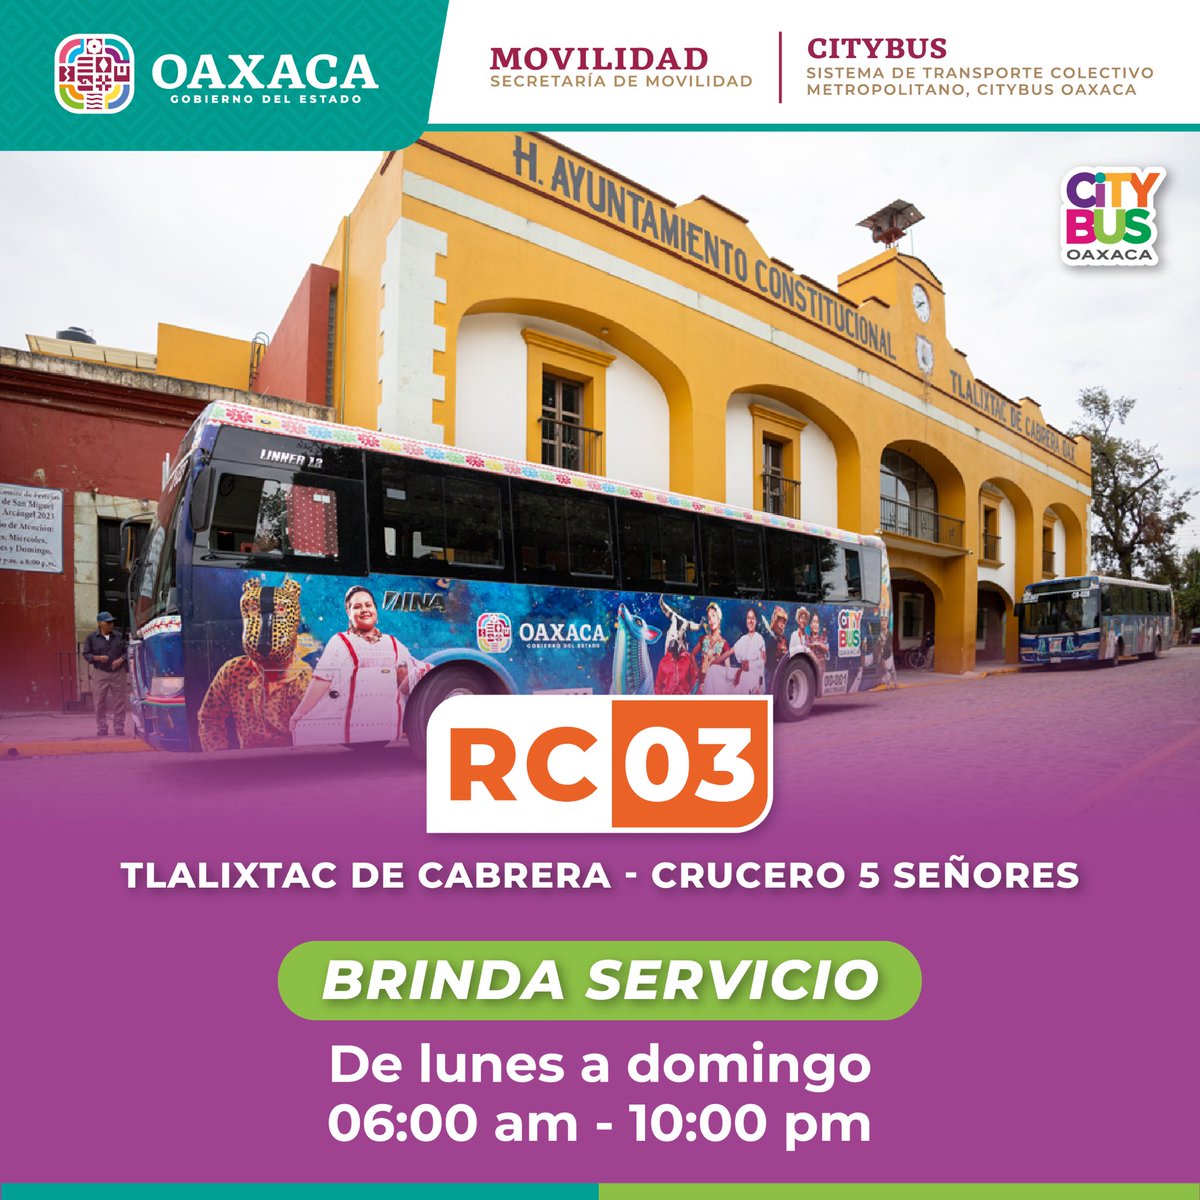 Nuestra ruta RC03 ha mejorado la movilidad para cientos de personas usuarias de la zona Metropolitana de Oaxaca. Conoce sus días y horarios de operación. 

#ViajaConNosotros